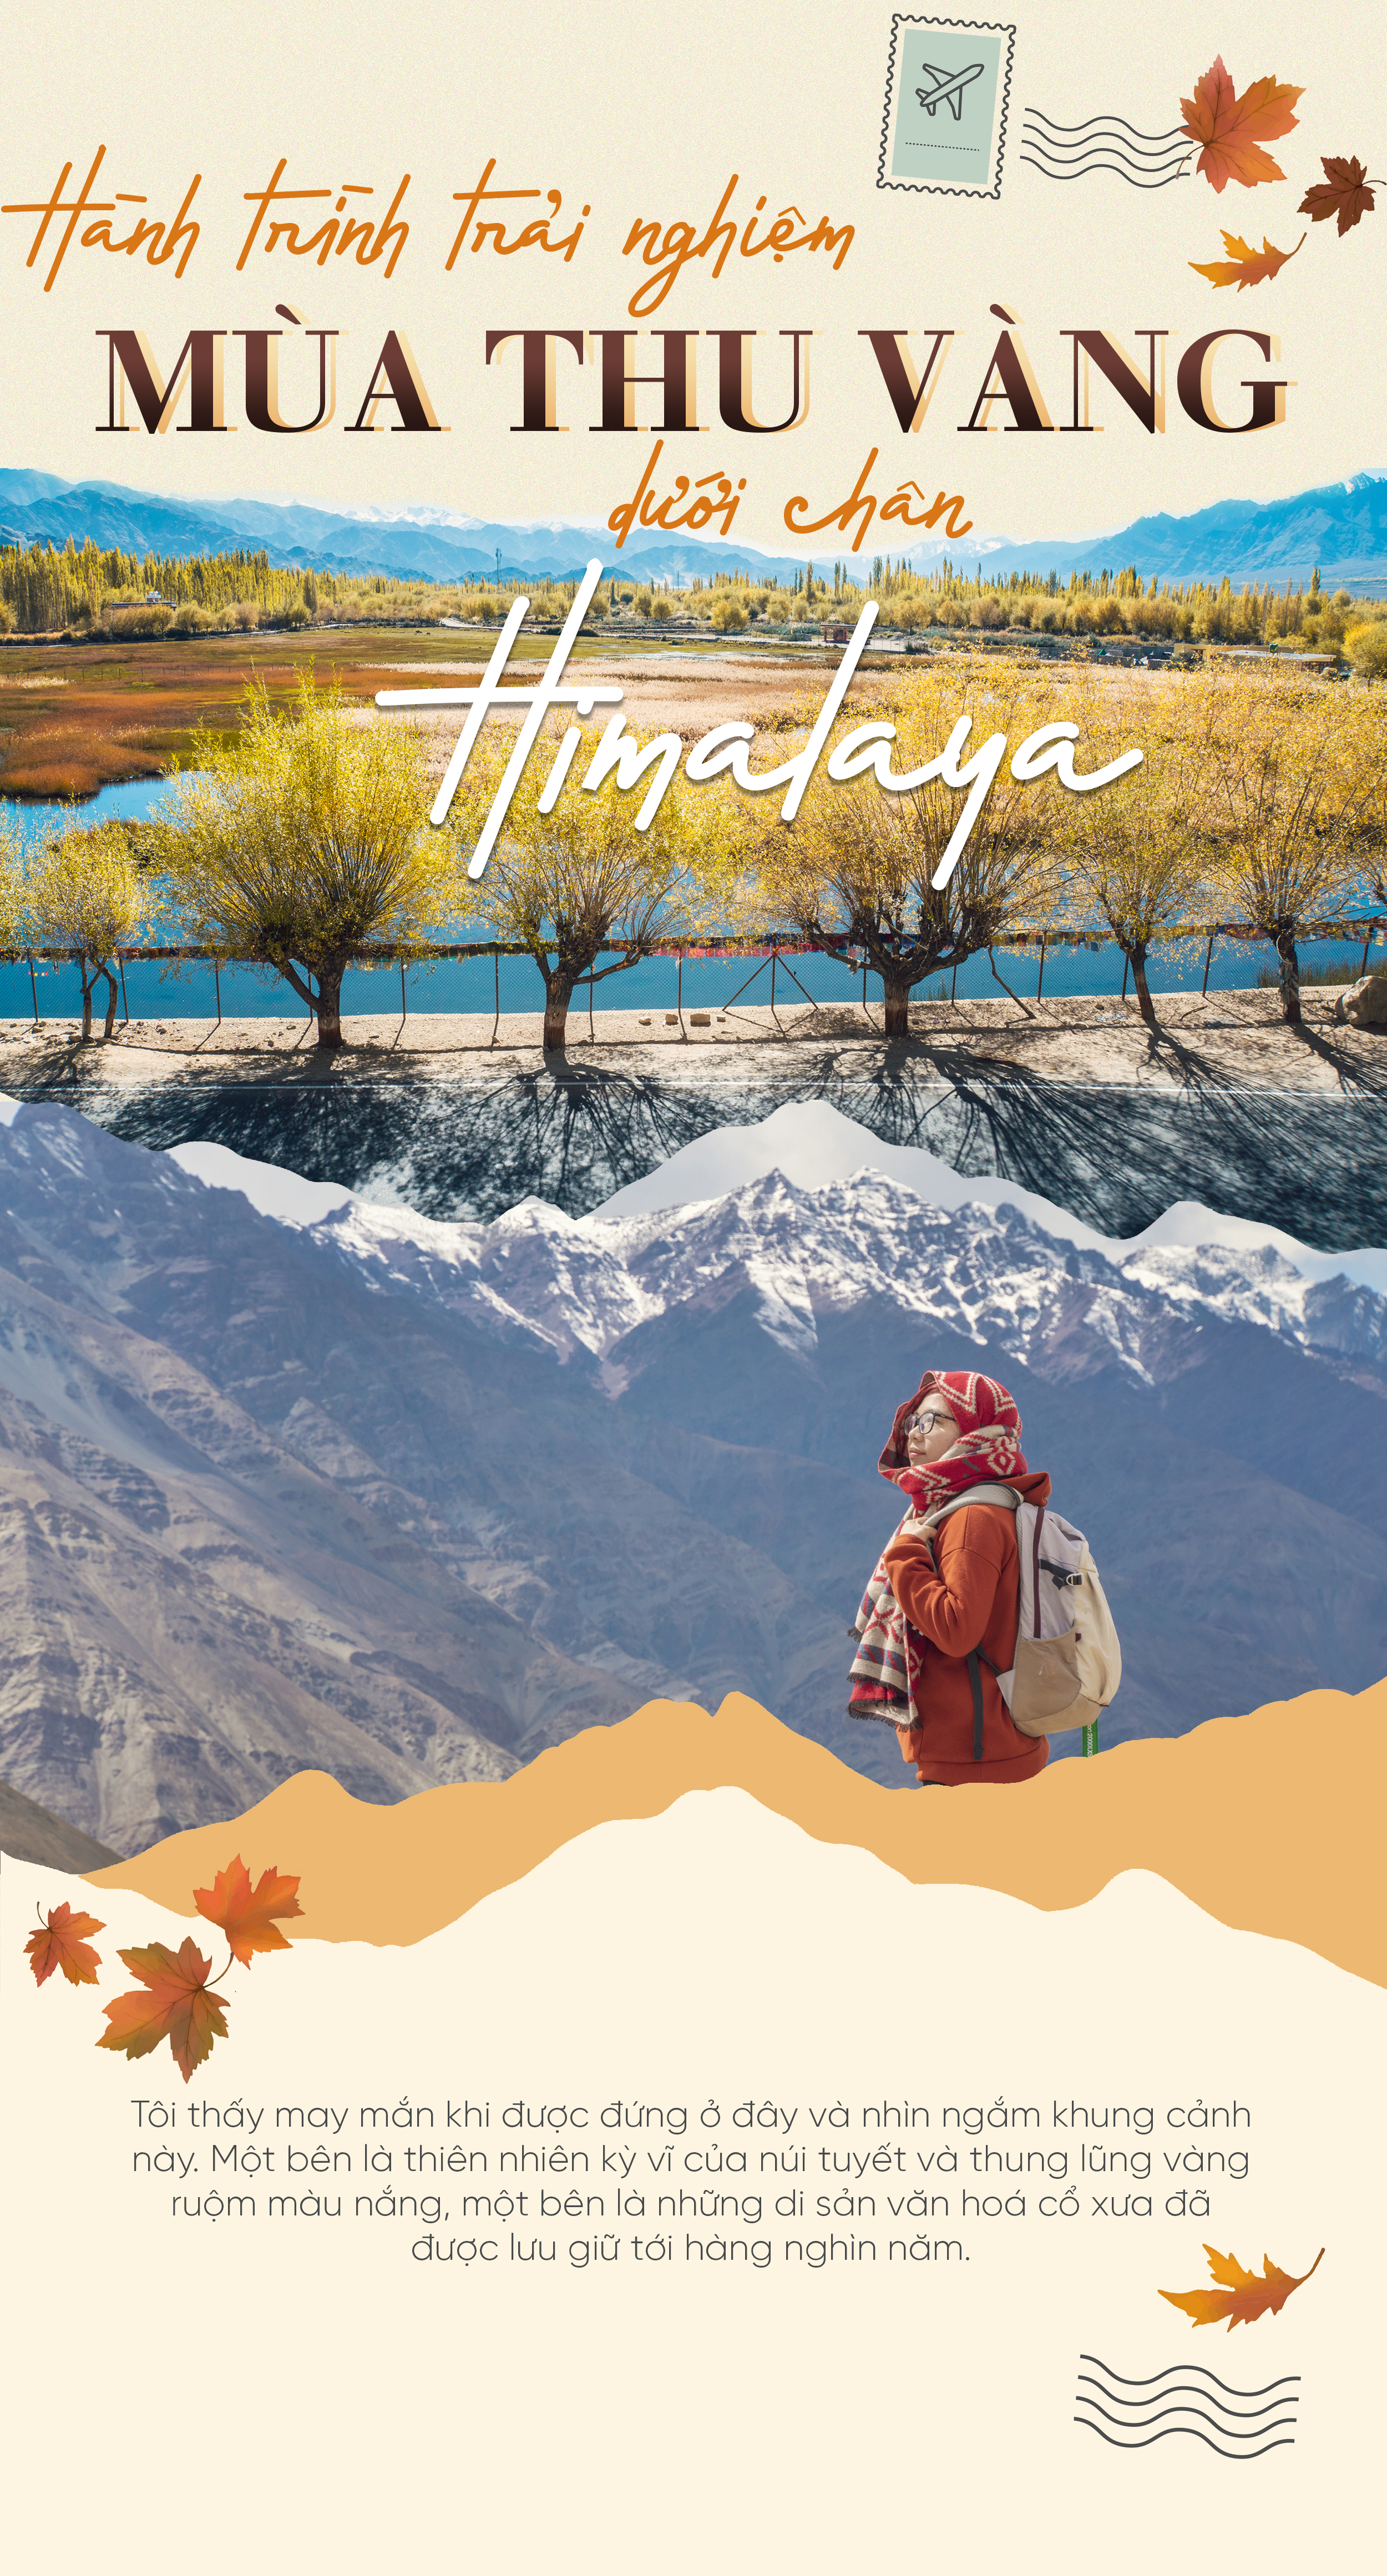 Mùa thu vàng Himalaya rực rỡ với những cánh rừng, những đèo dốc và những khu định cư thôn quê tuyệt đẹp. Hãy khám phá ảnh thật đẹp về mùa thu vàng Himalaya để tận hưởng cảm giác bình yên và thư thái của một mùa thu đầy lãng mạn.